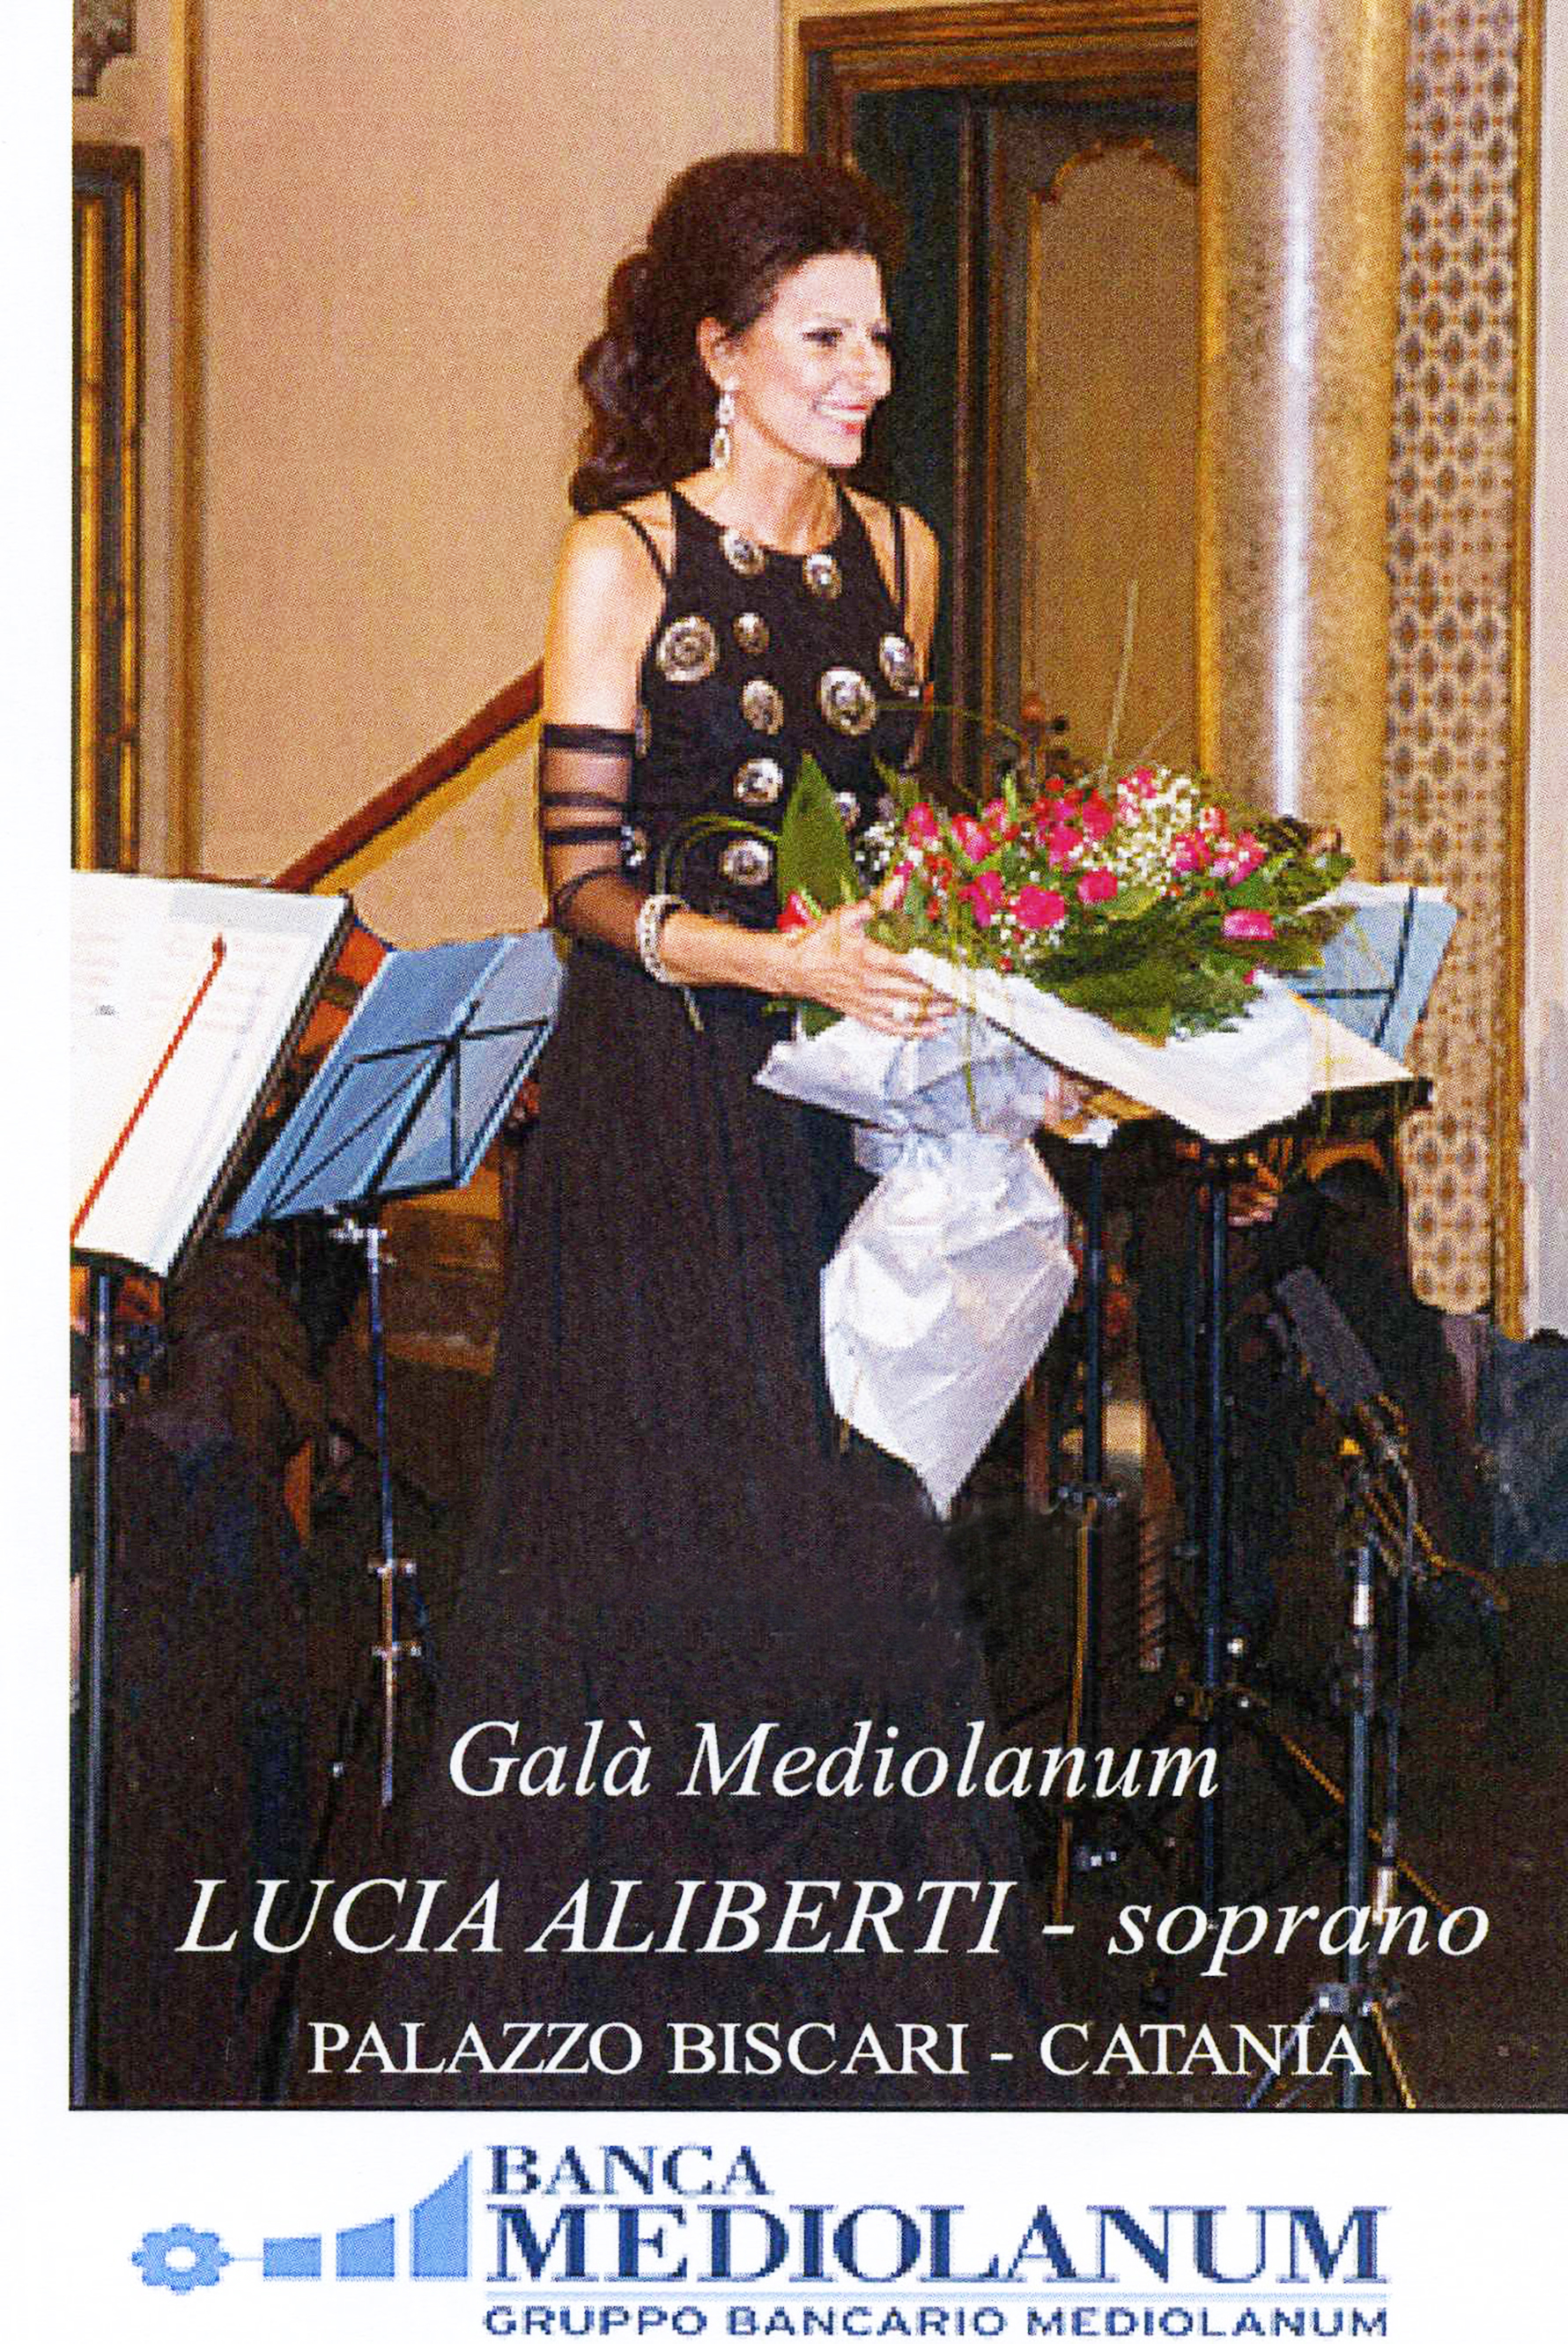 Lucia Aliberti⚘Galà Mediolanum⚘Concert⚘Live DVD Recording⚘Palazzo Biscari⚘Catania⚘:http://www.luciaaliberti.it #luciaaliberti #livedvdrecording #mediolanum #concert #palazzobiscari #catania